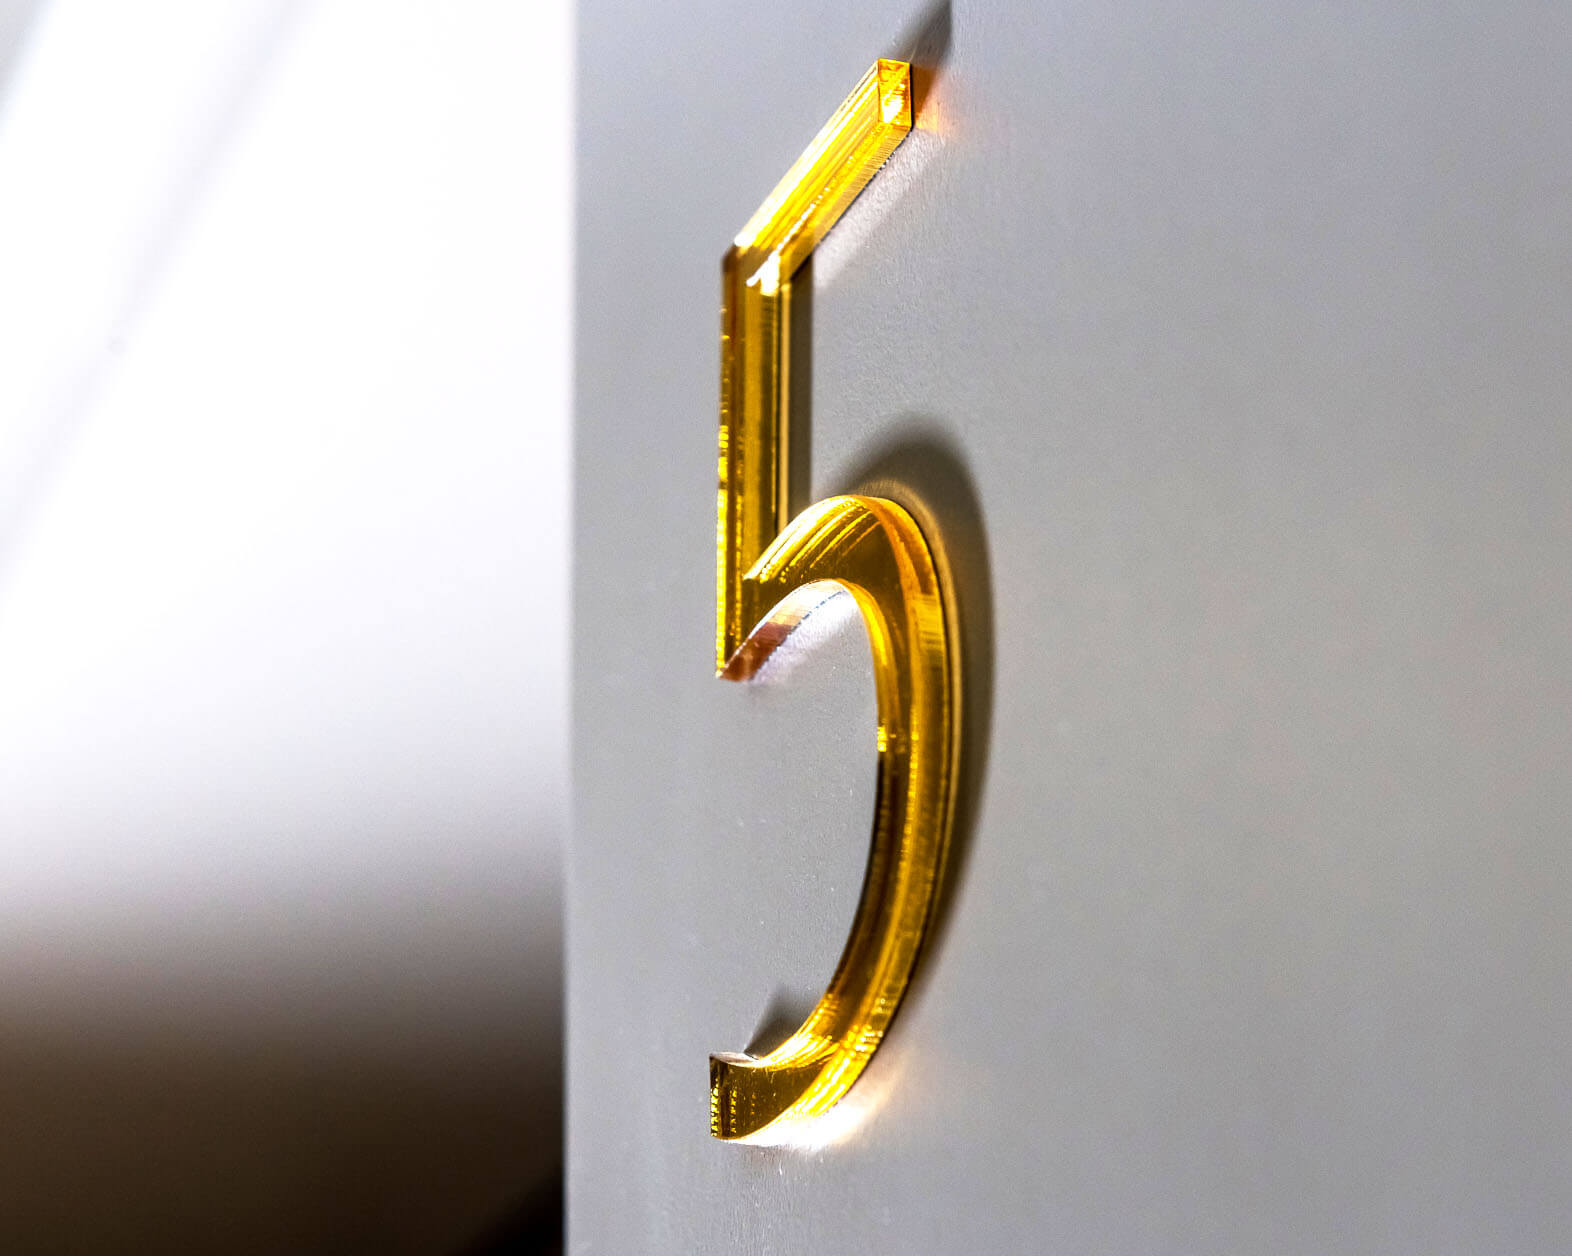 5-door-numbers - 5;building marking - marking - inside - marking - rooms - numbers